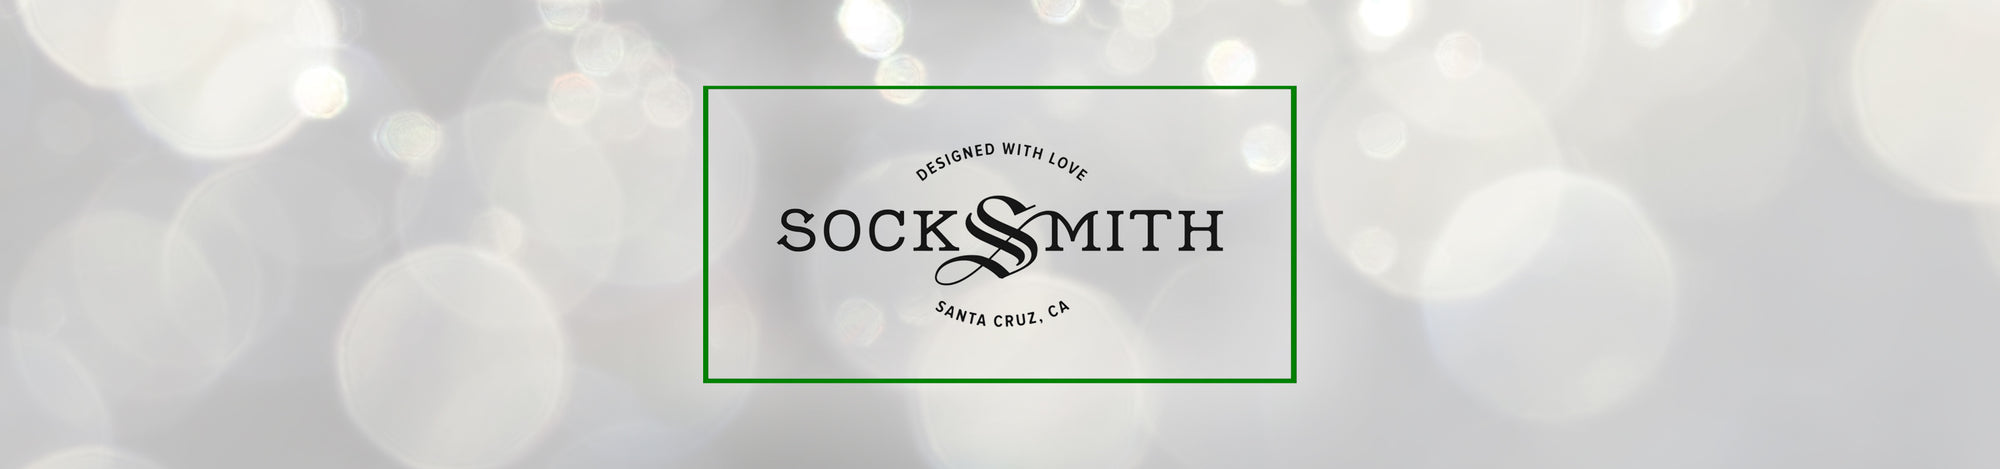 Socksmith